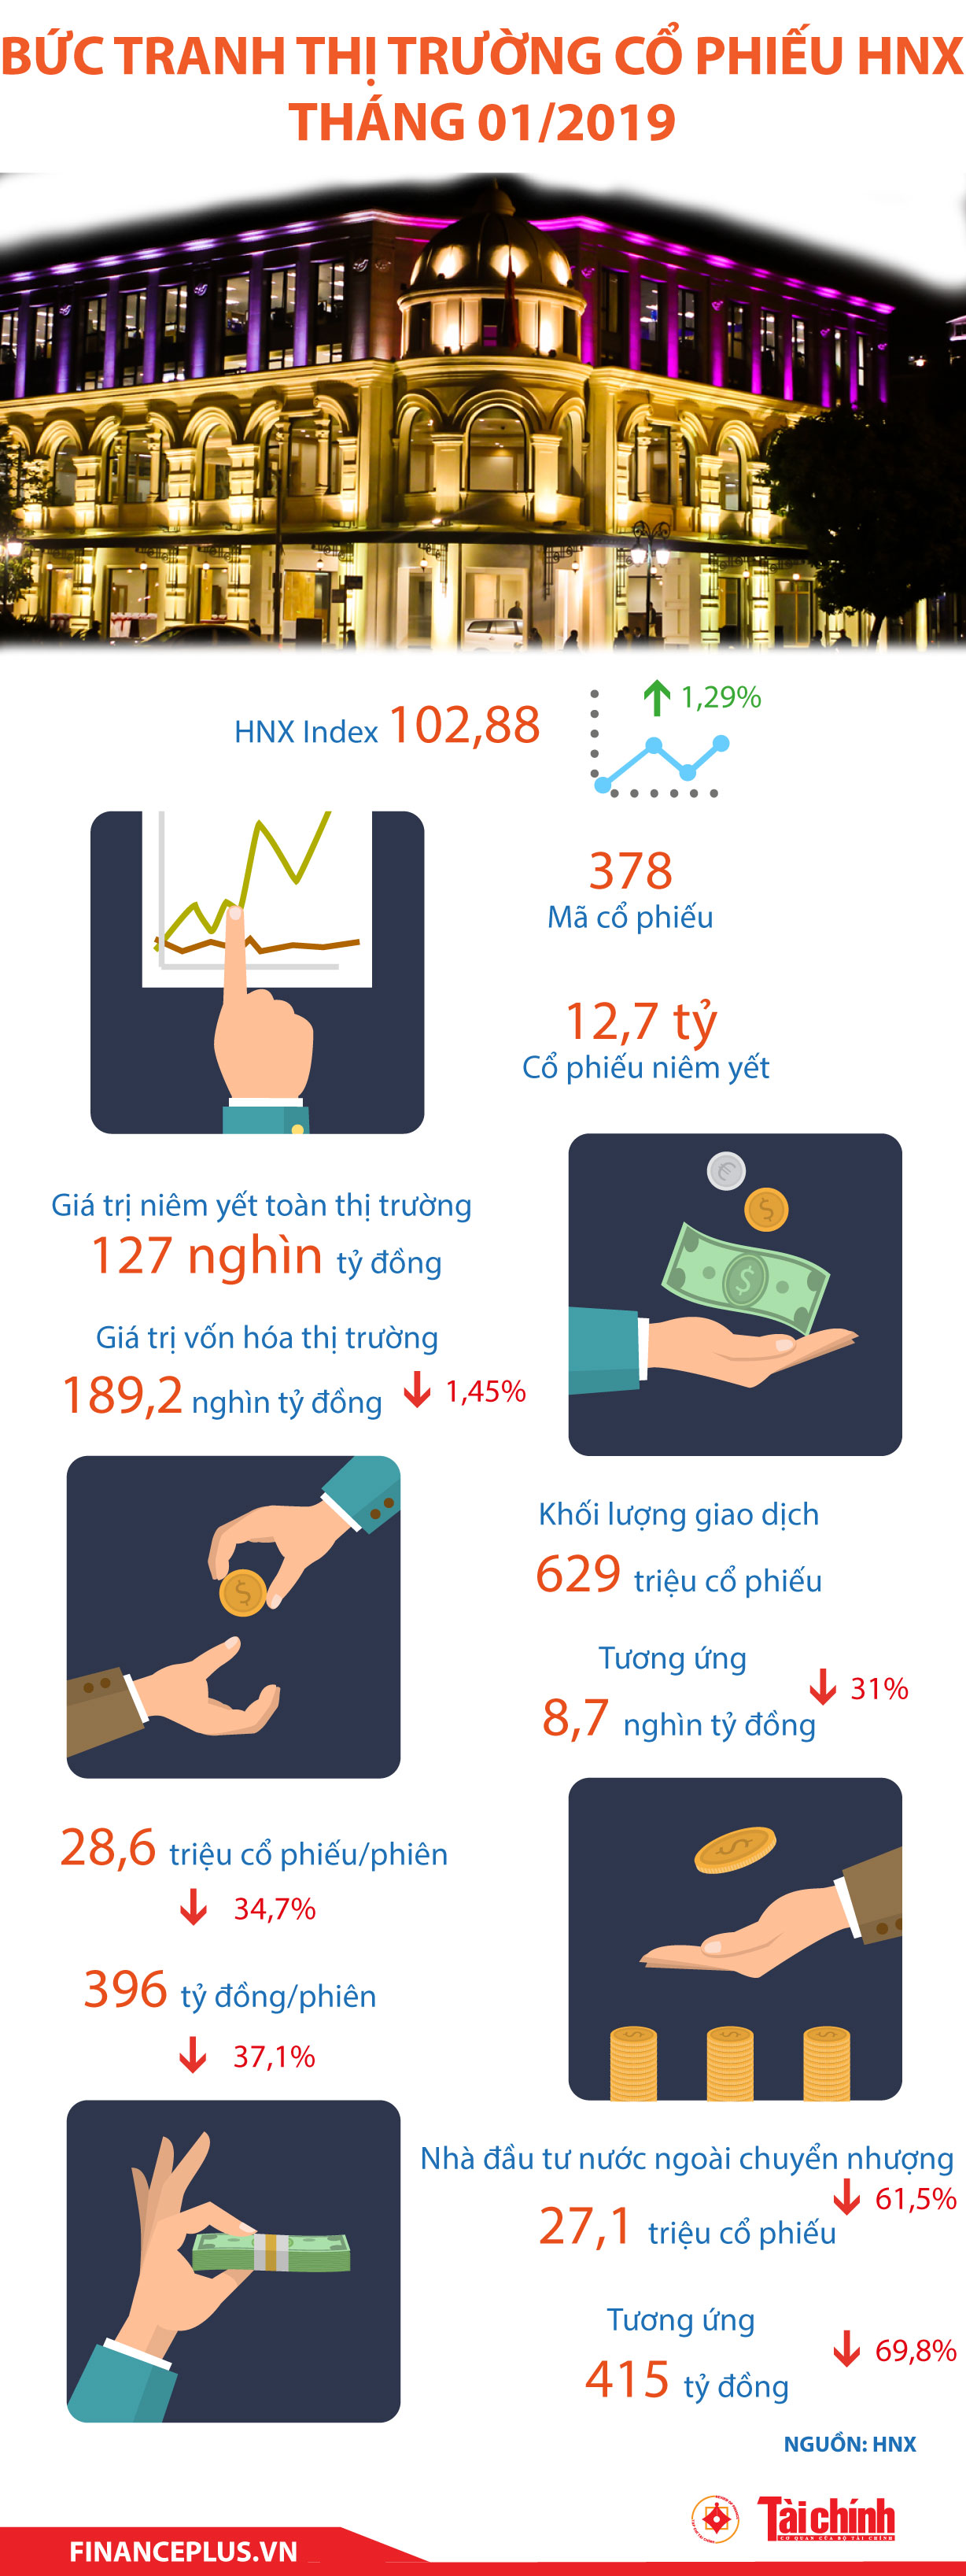 [Infographic] Bức tranh thị trường cổ phiếu HNX tháng 1/2019 - Ảnh 1